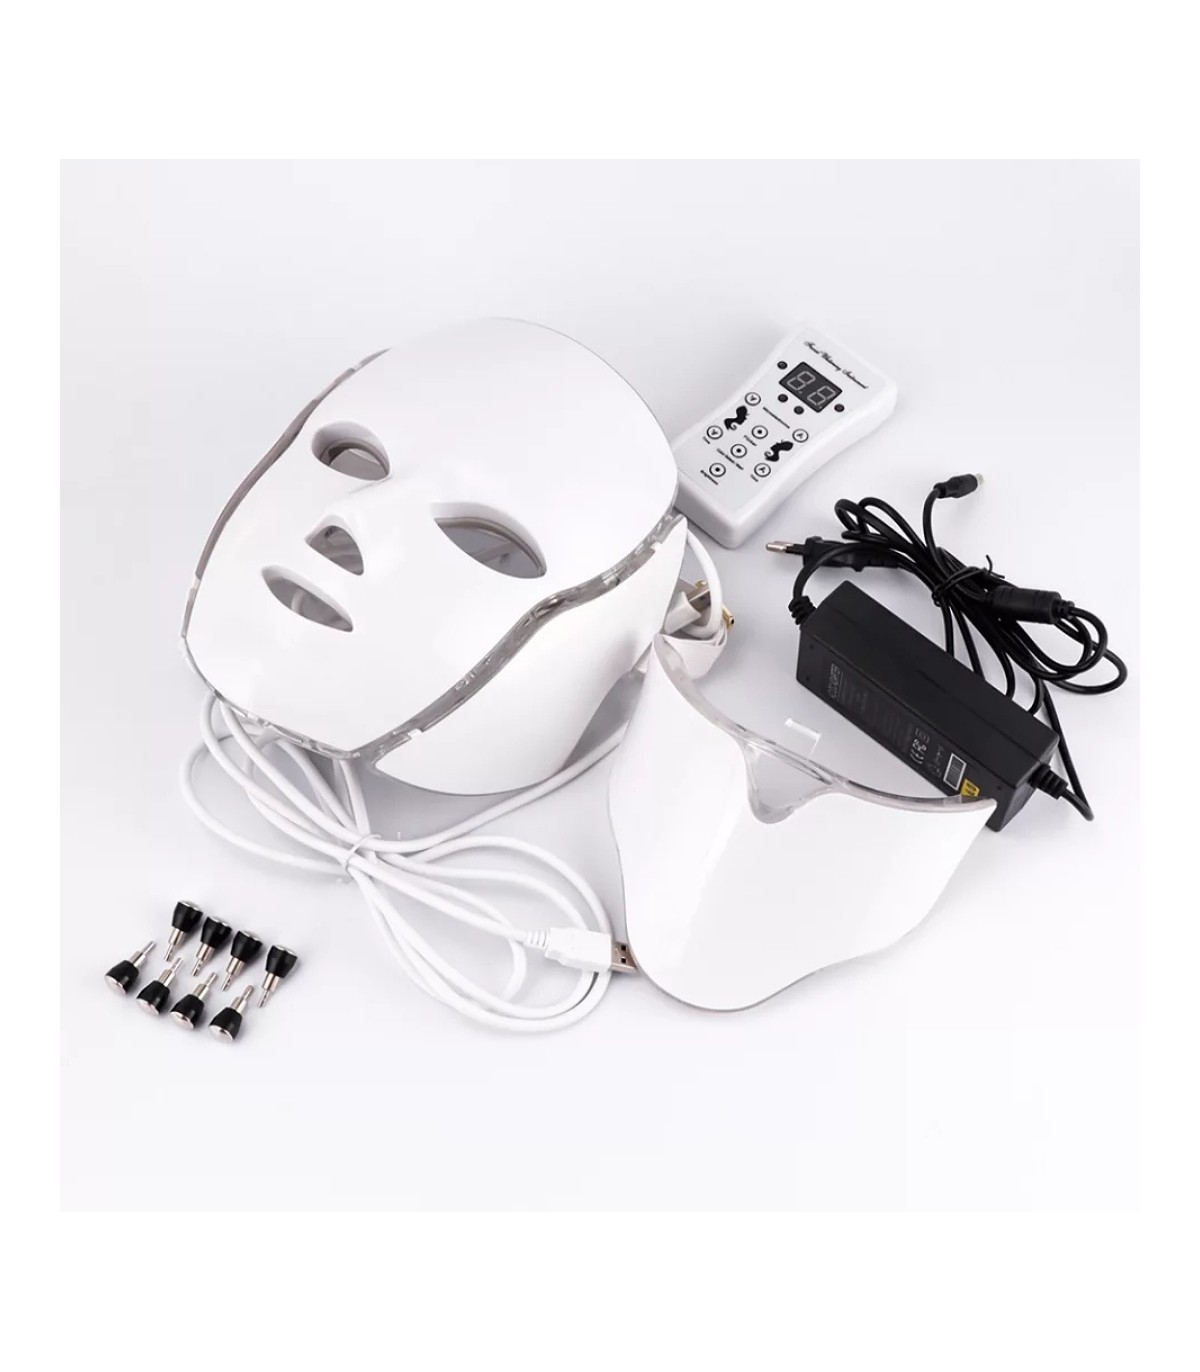 Masque lumineux DEL à 7 couleurs avec câble de recharge USB